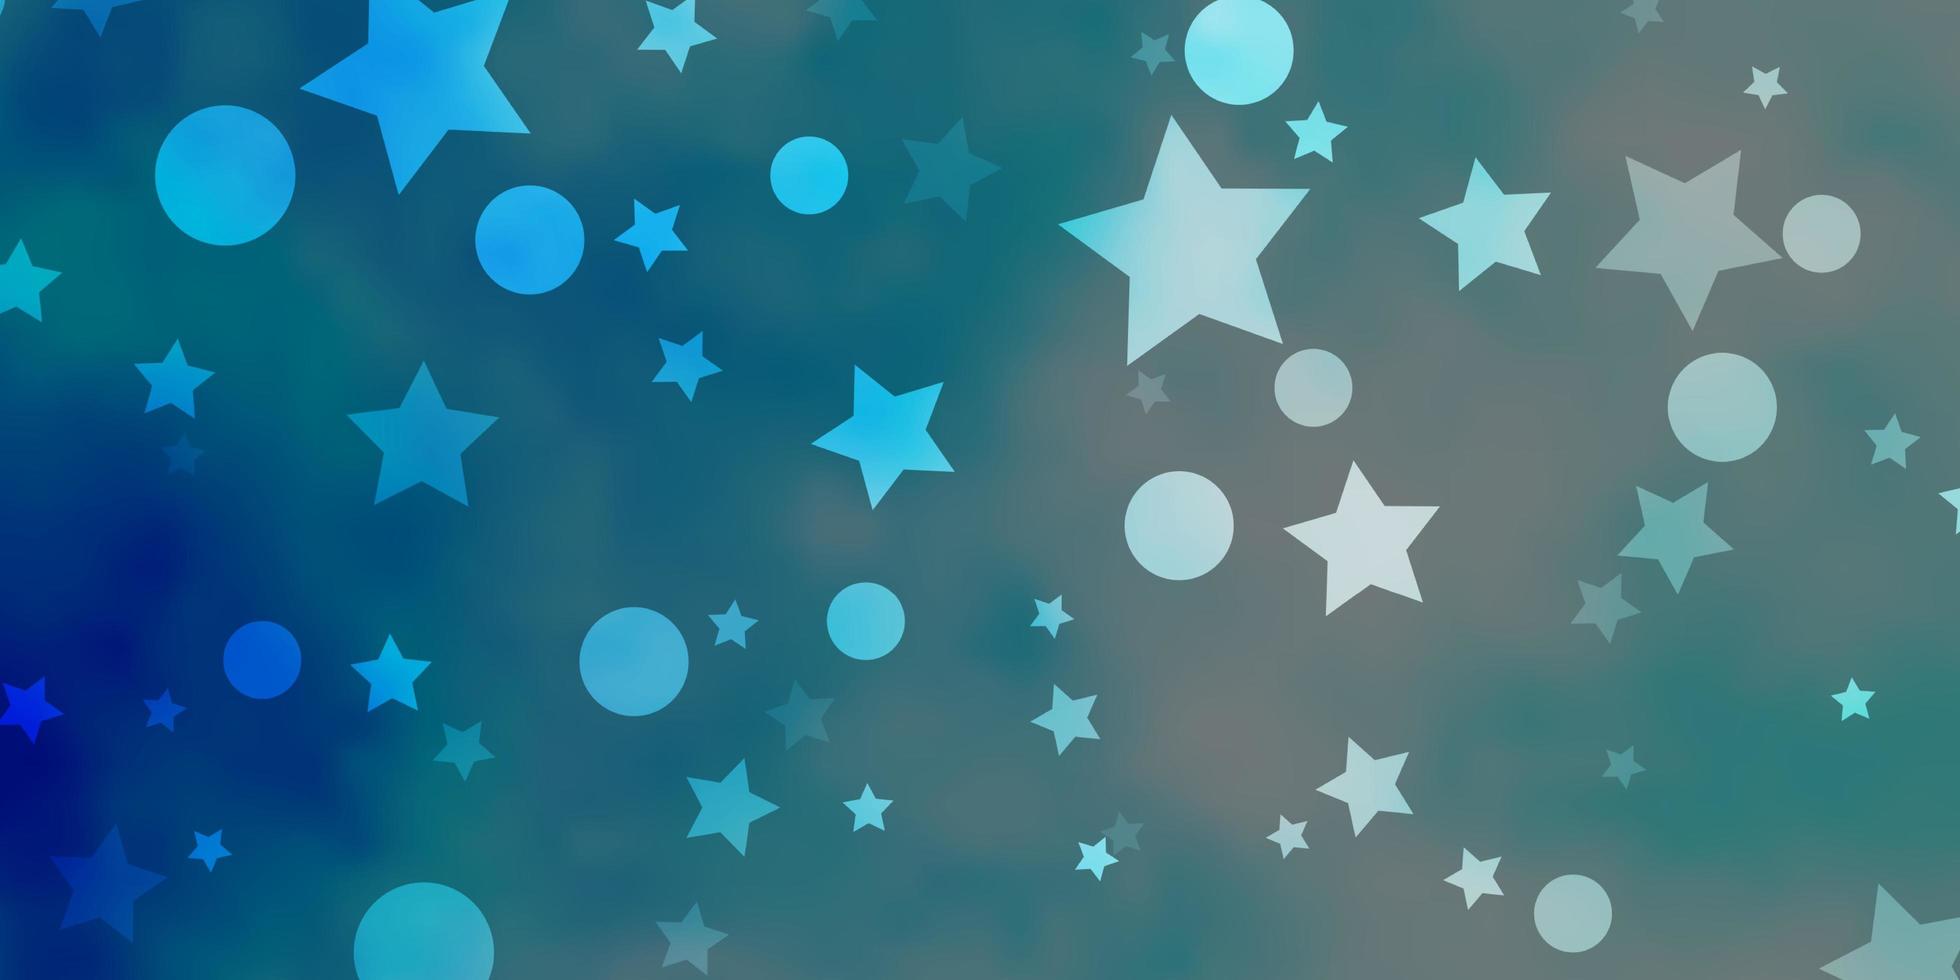 fond de vecteur bleu clair avec des cercles étoiles design abstrait dans un style dégradé avec motif étoiles bulles pour fonds d'écran en tissu à la mode